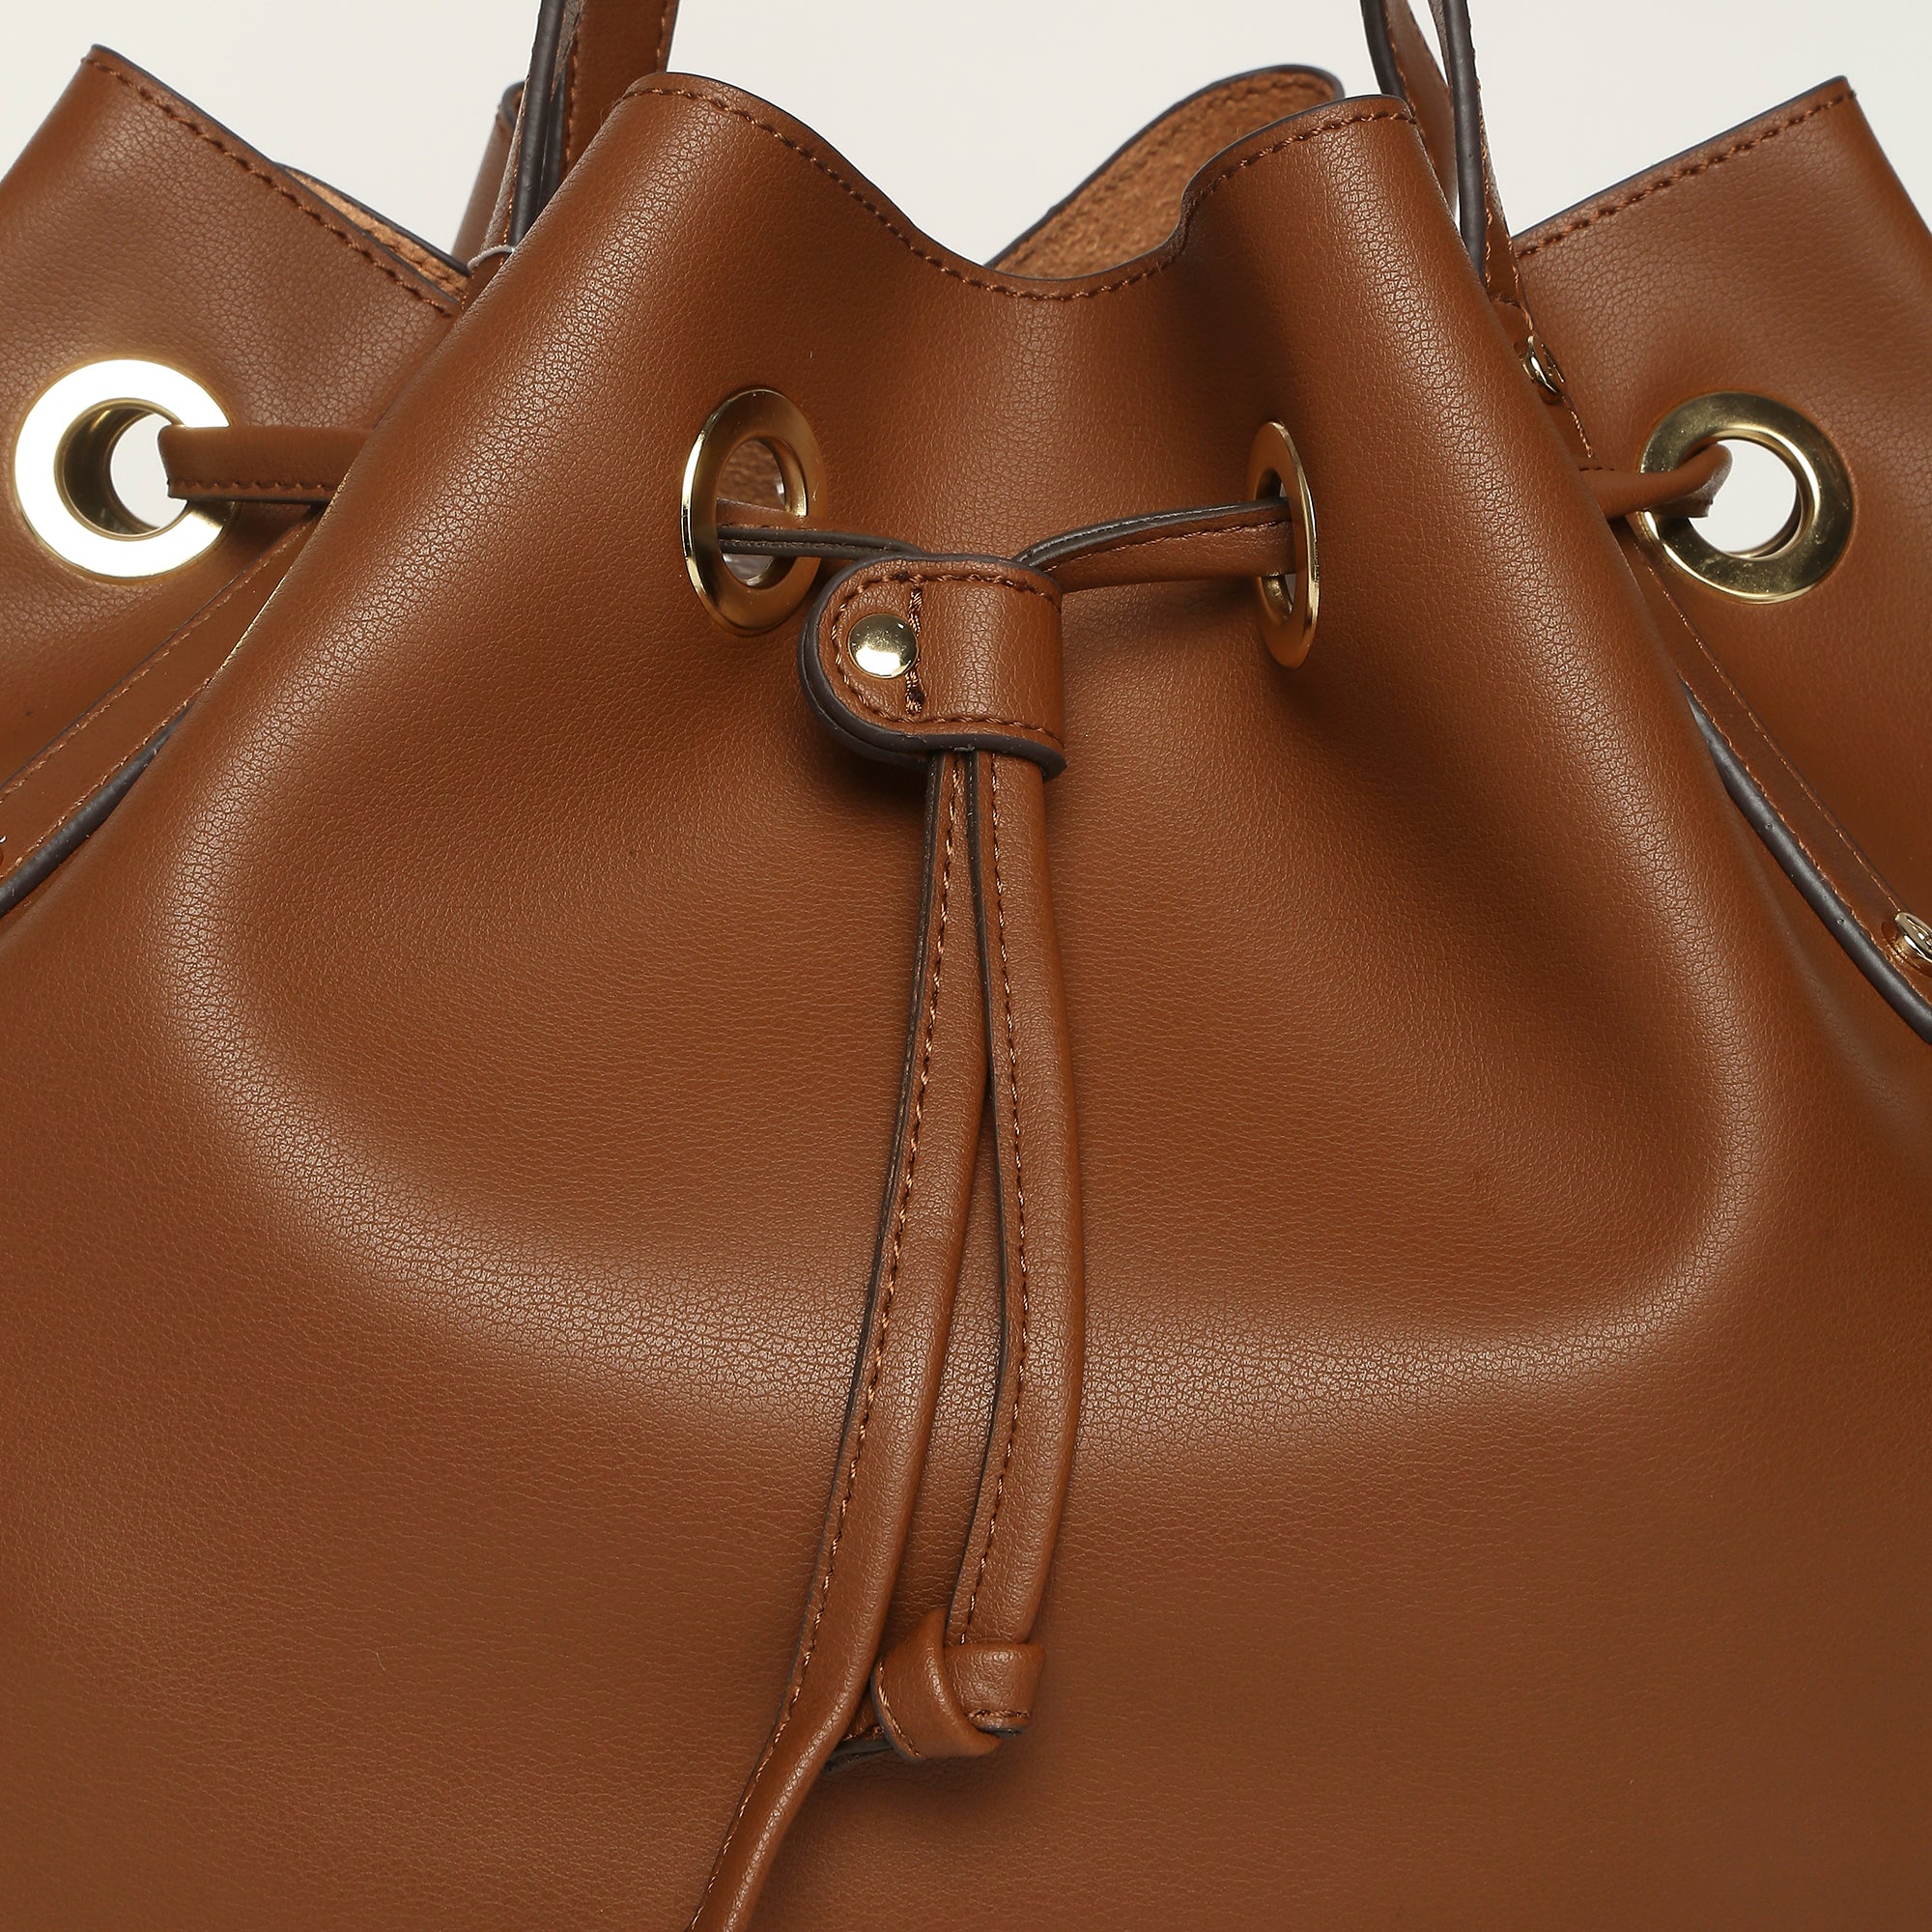 Accessorize London Women's Faux Leather Tan Eyelet Drawstring Bag